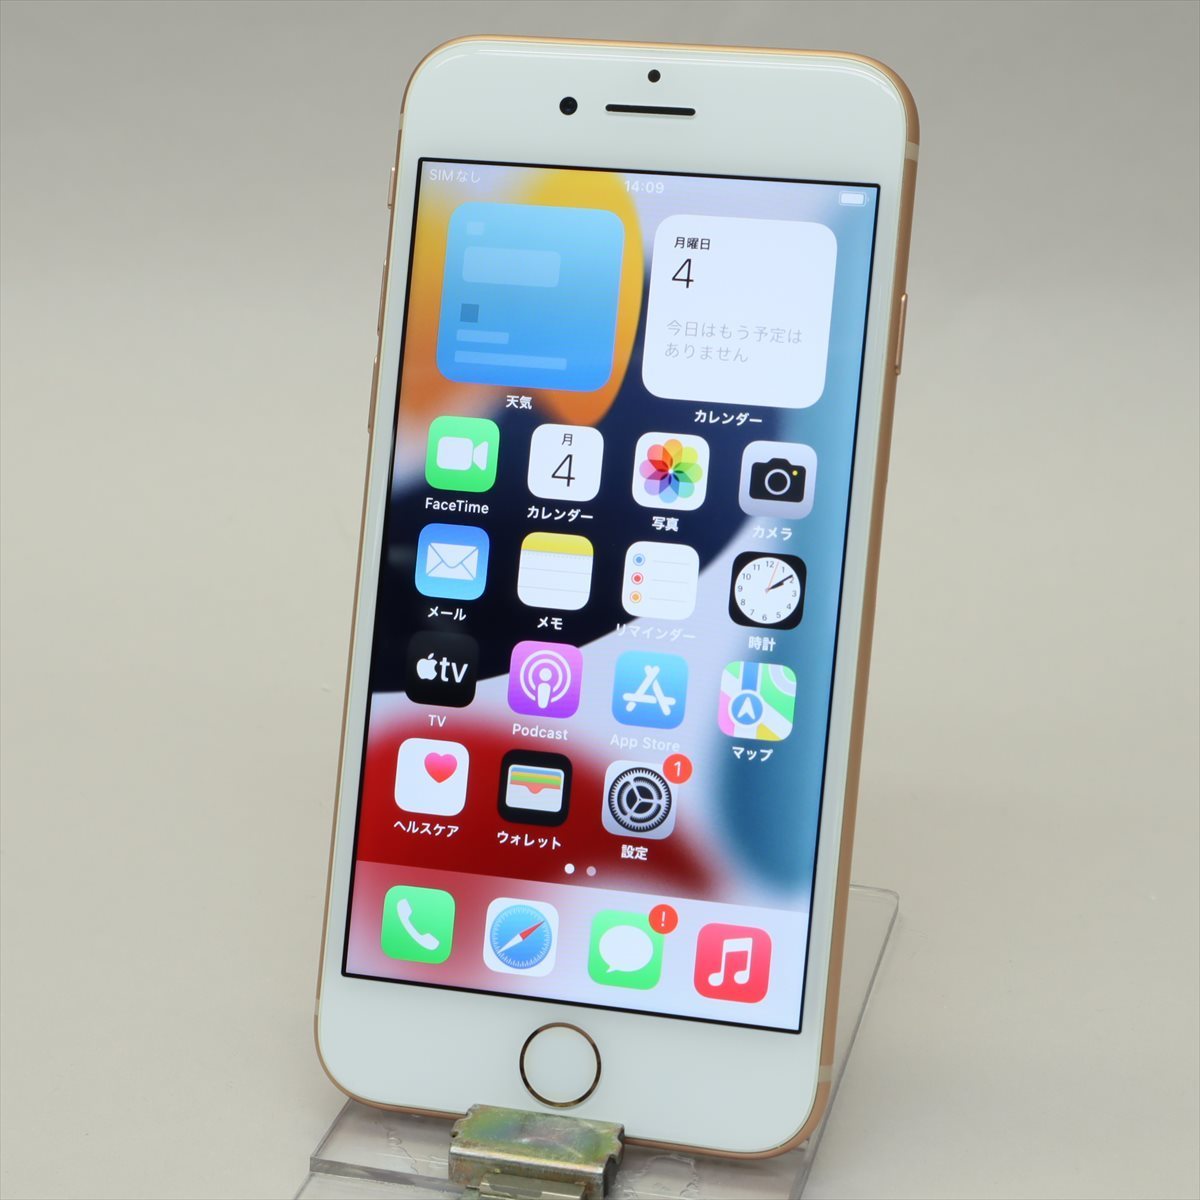 Apple iPhone8 64GB Gold A1906 MQ7A2J/A バッテリ80% SIMフリー SIM 